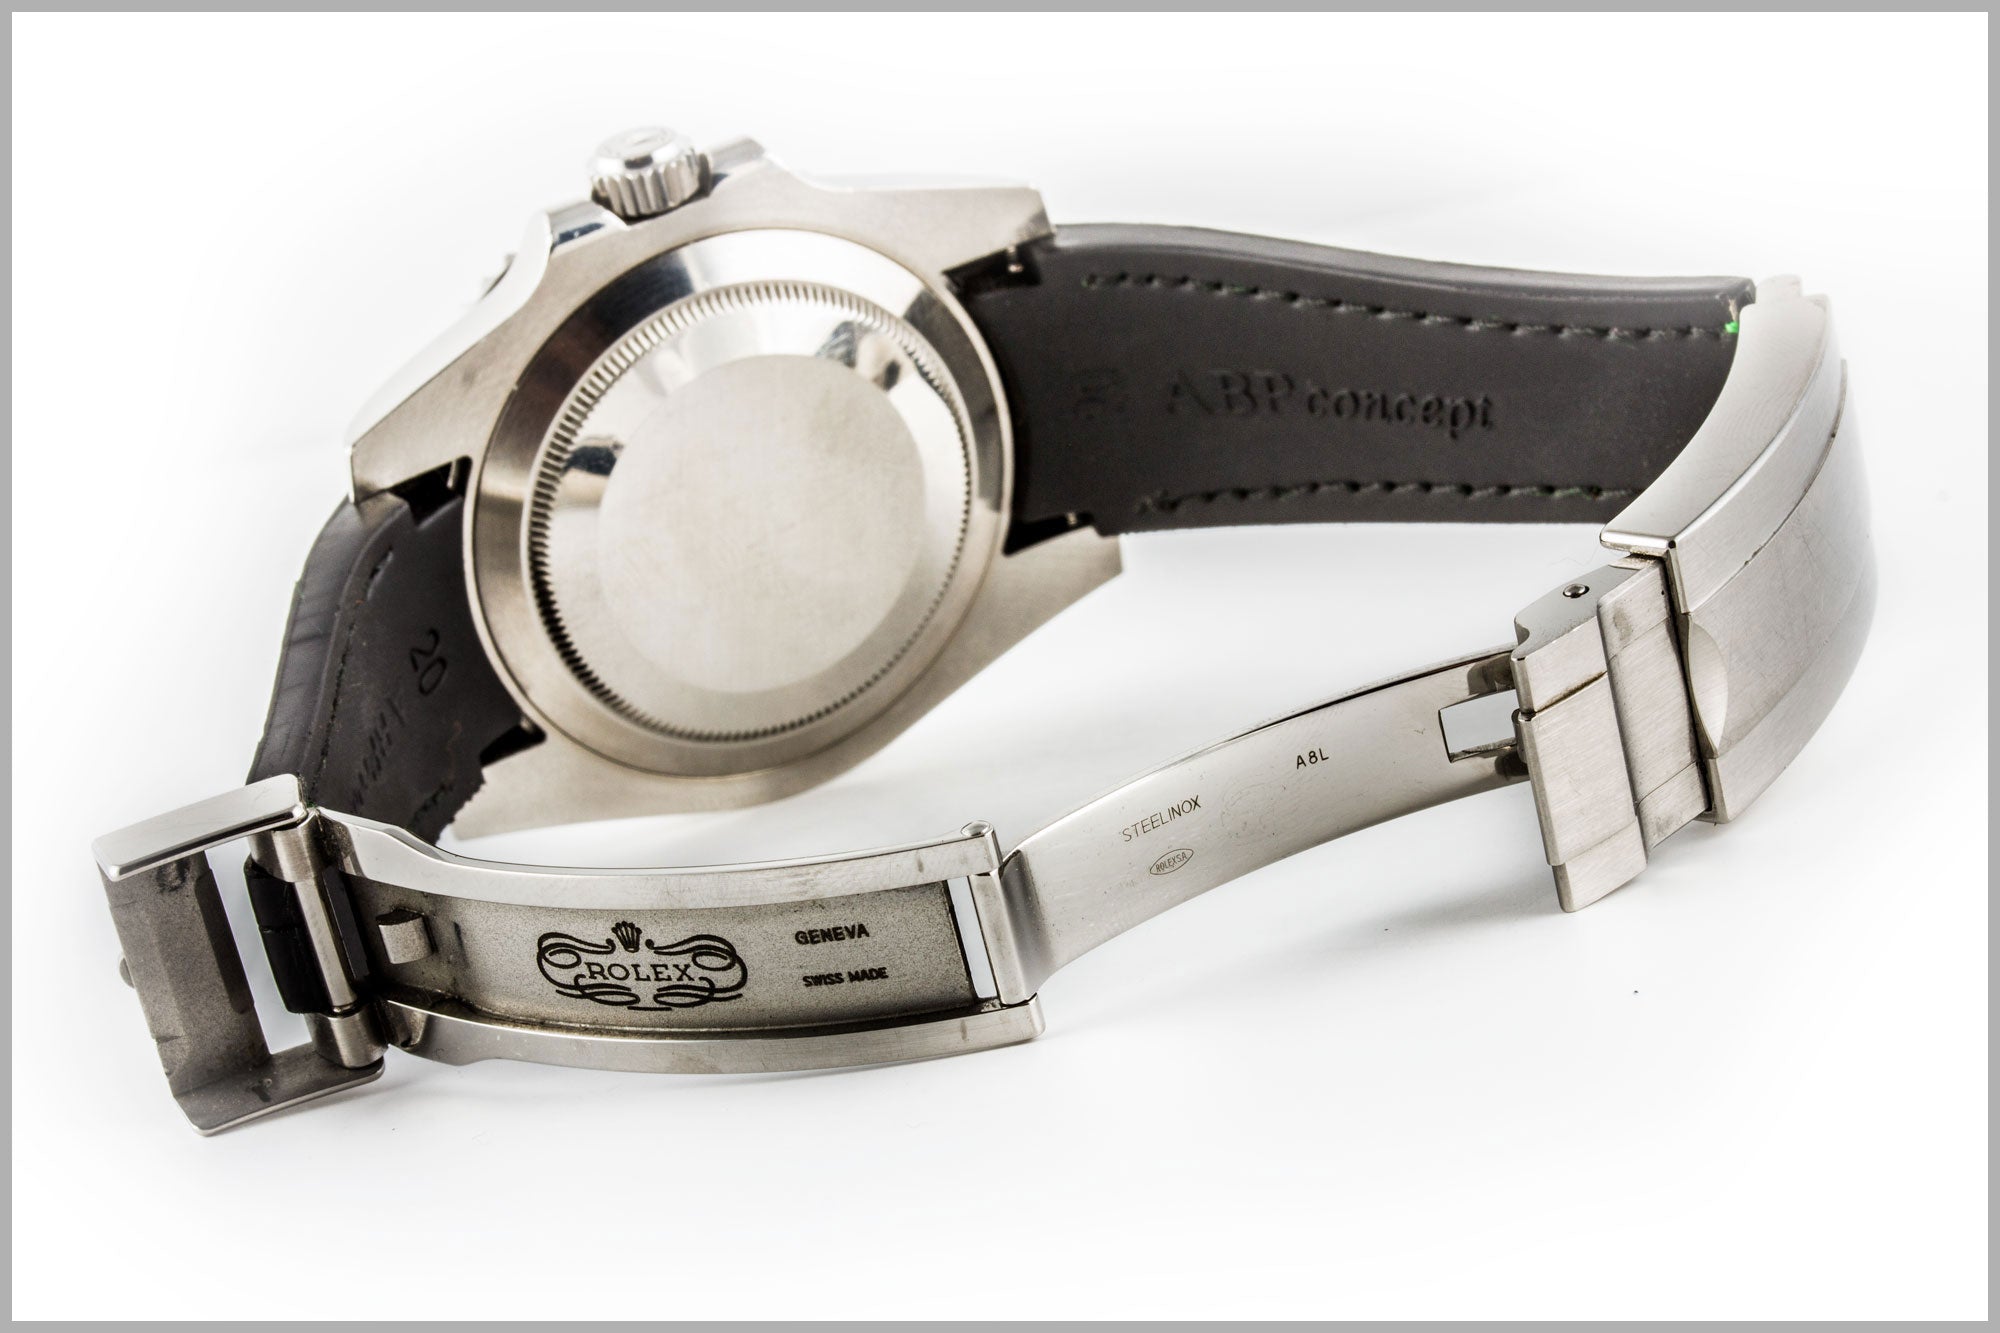 Rolex – Bracelet montre caoutchouc R Strap - Rubber camo (gris, bleu, vert) - watch band leather strap - ABP Concept -